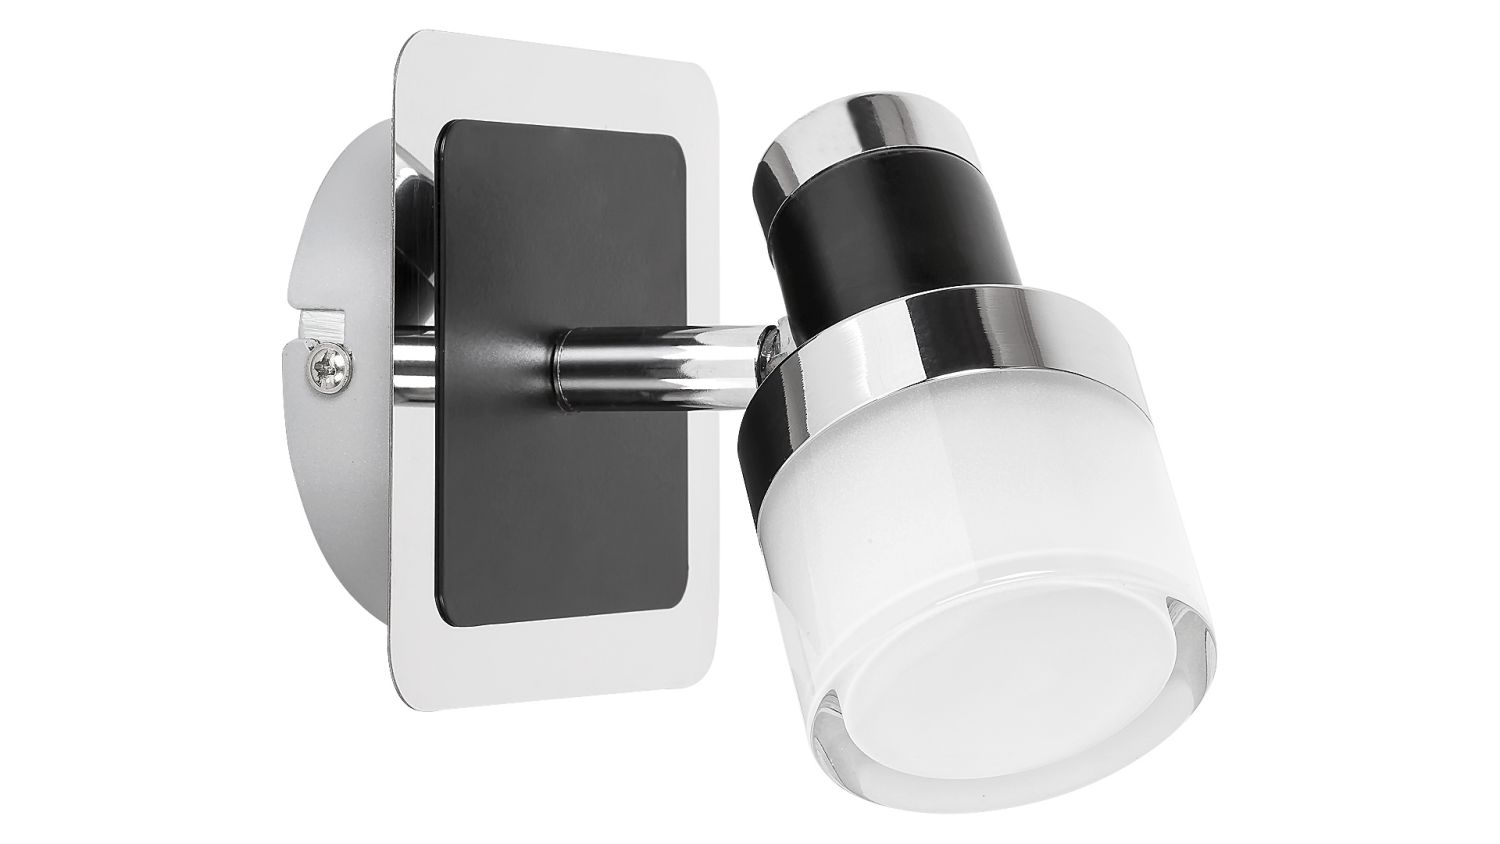 Moderne LED Wandlampe Bad Kompakt 400lm dekorativ